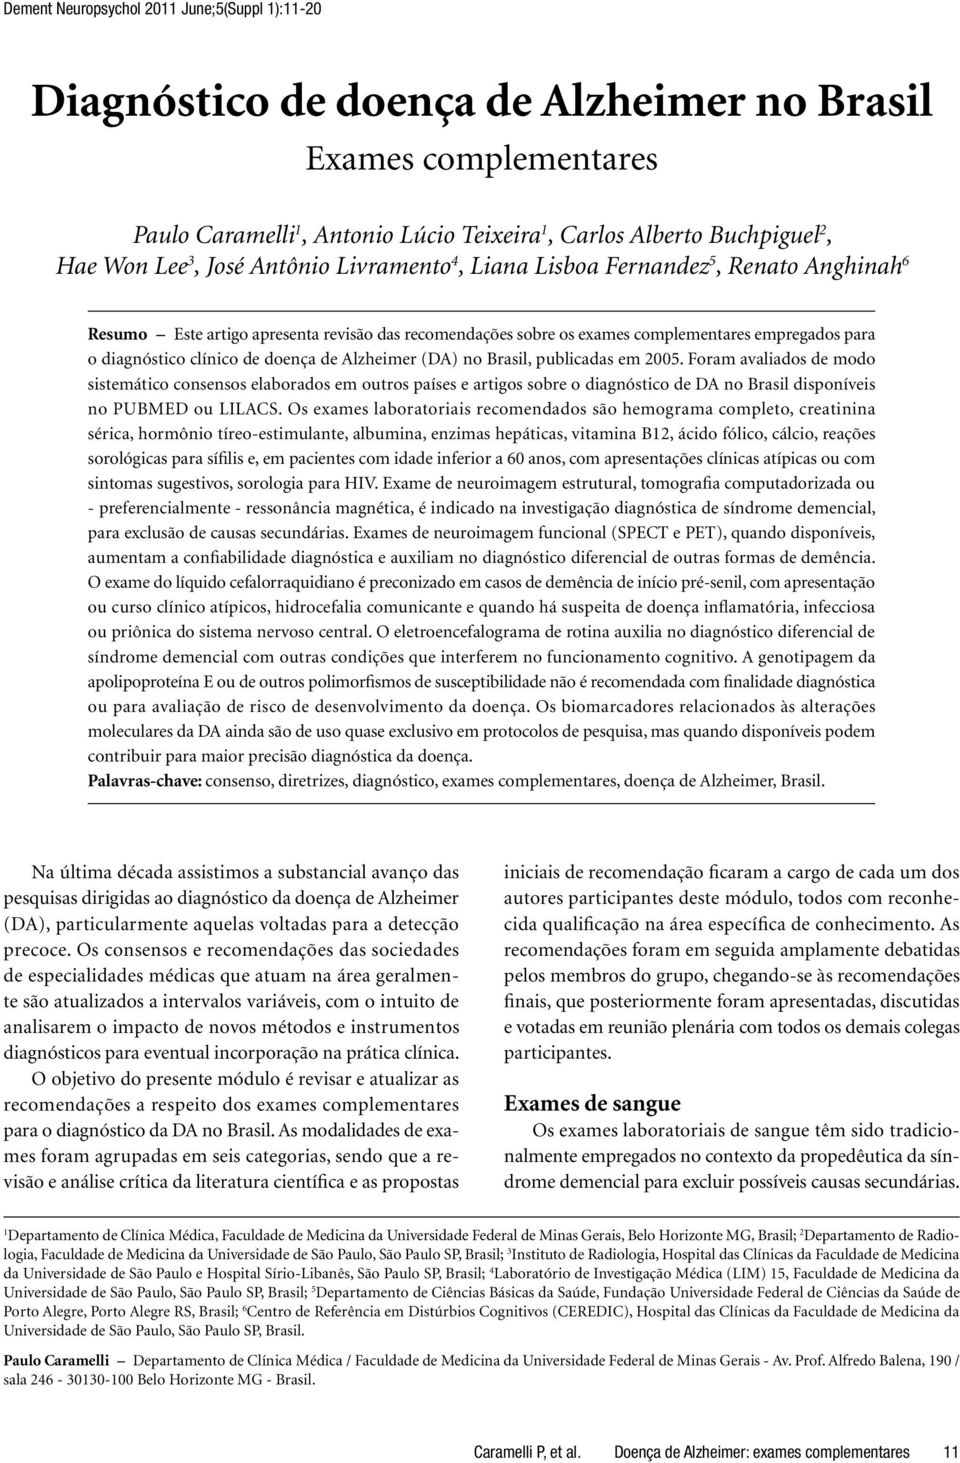 de doença de Alzheimer (DA) no Brasil, publicadas em 2005.